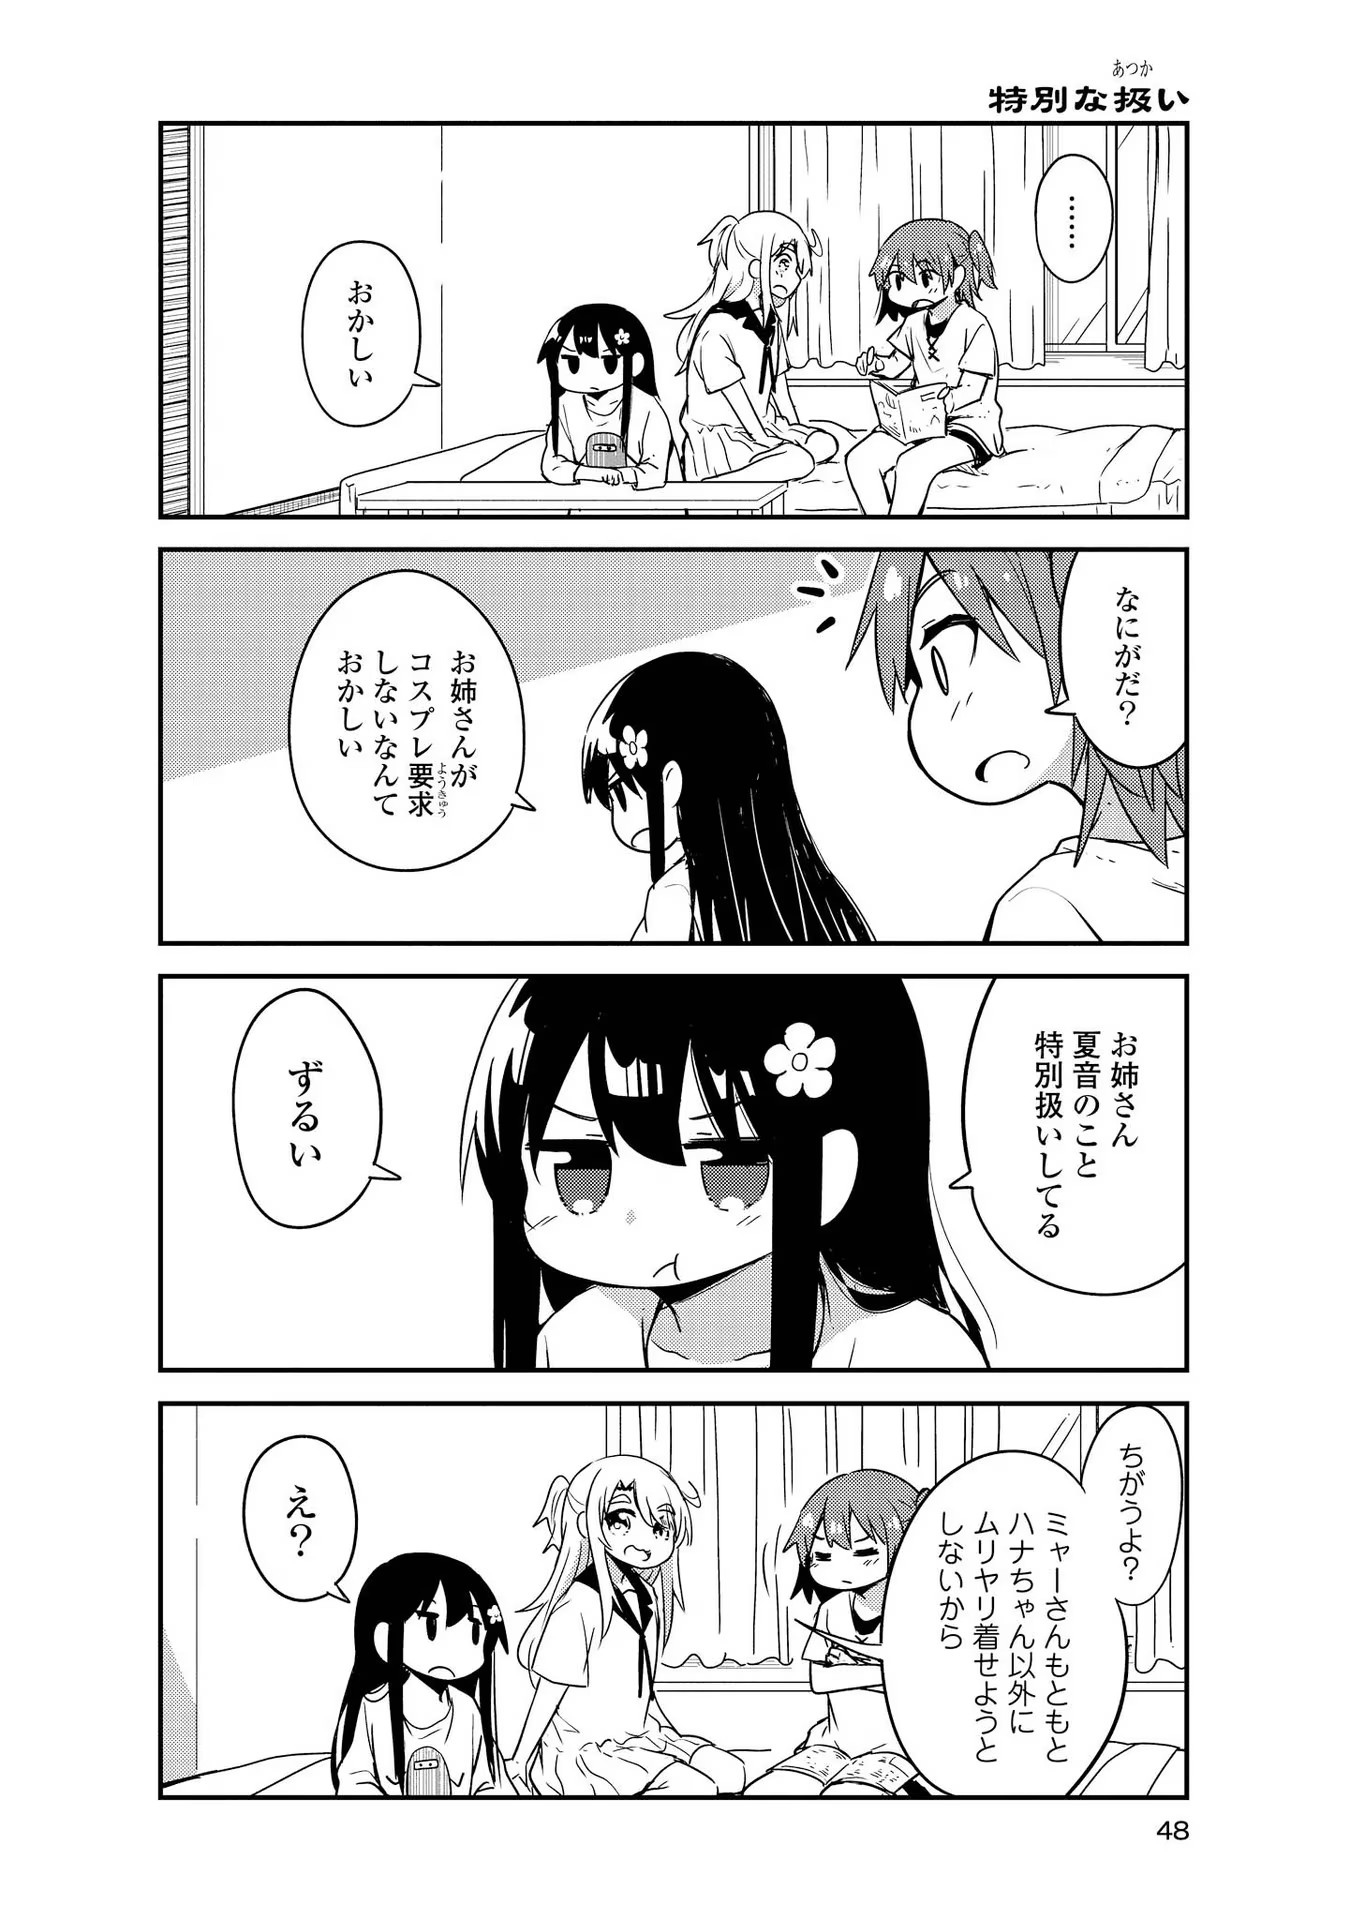 Watashi ni Tenshi ga Maiorita! - Chapter 24 - Page 4